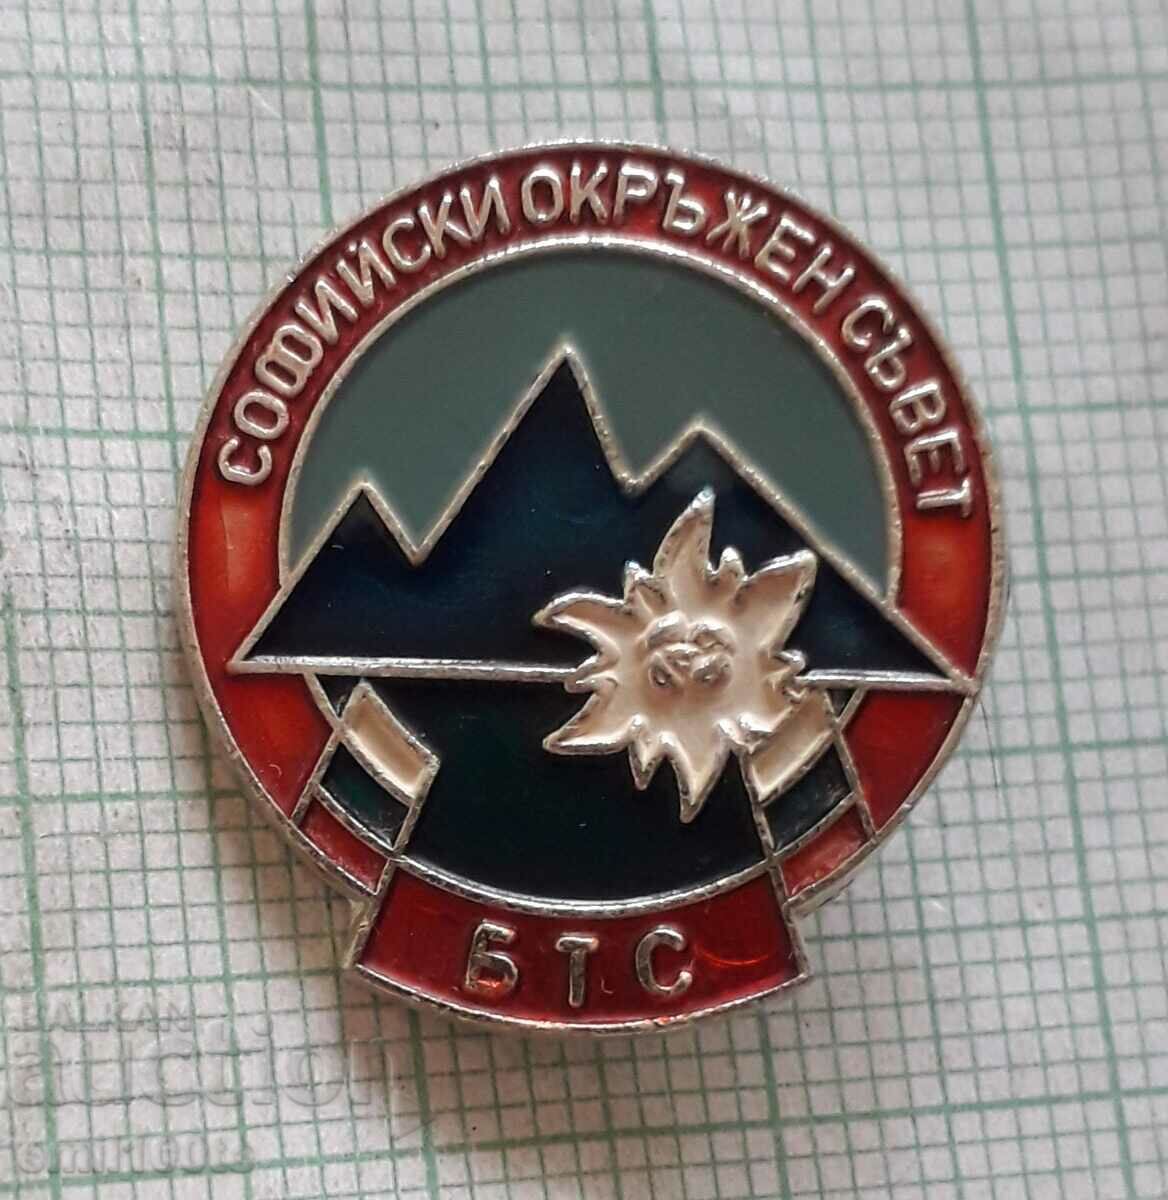 Badge - Sofia District Council BTS